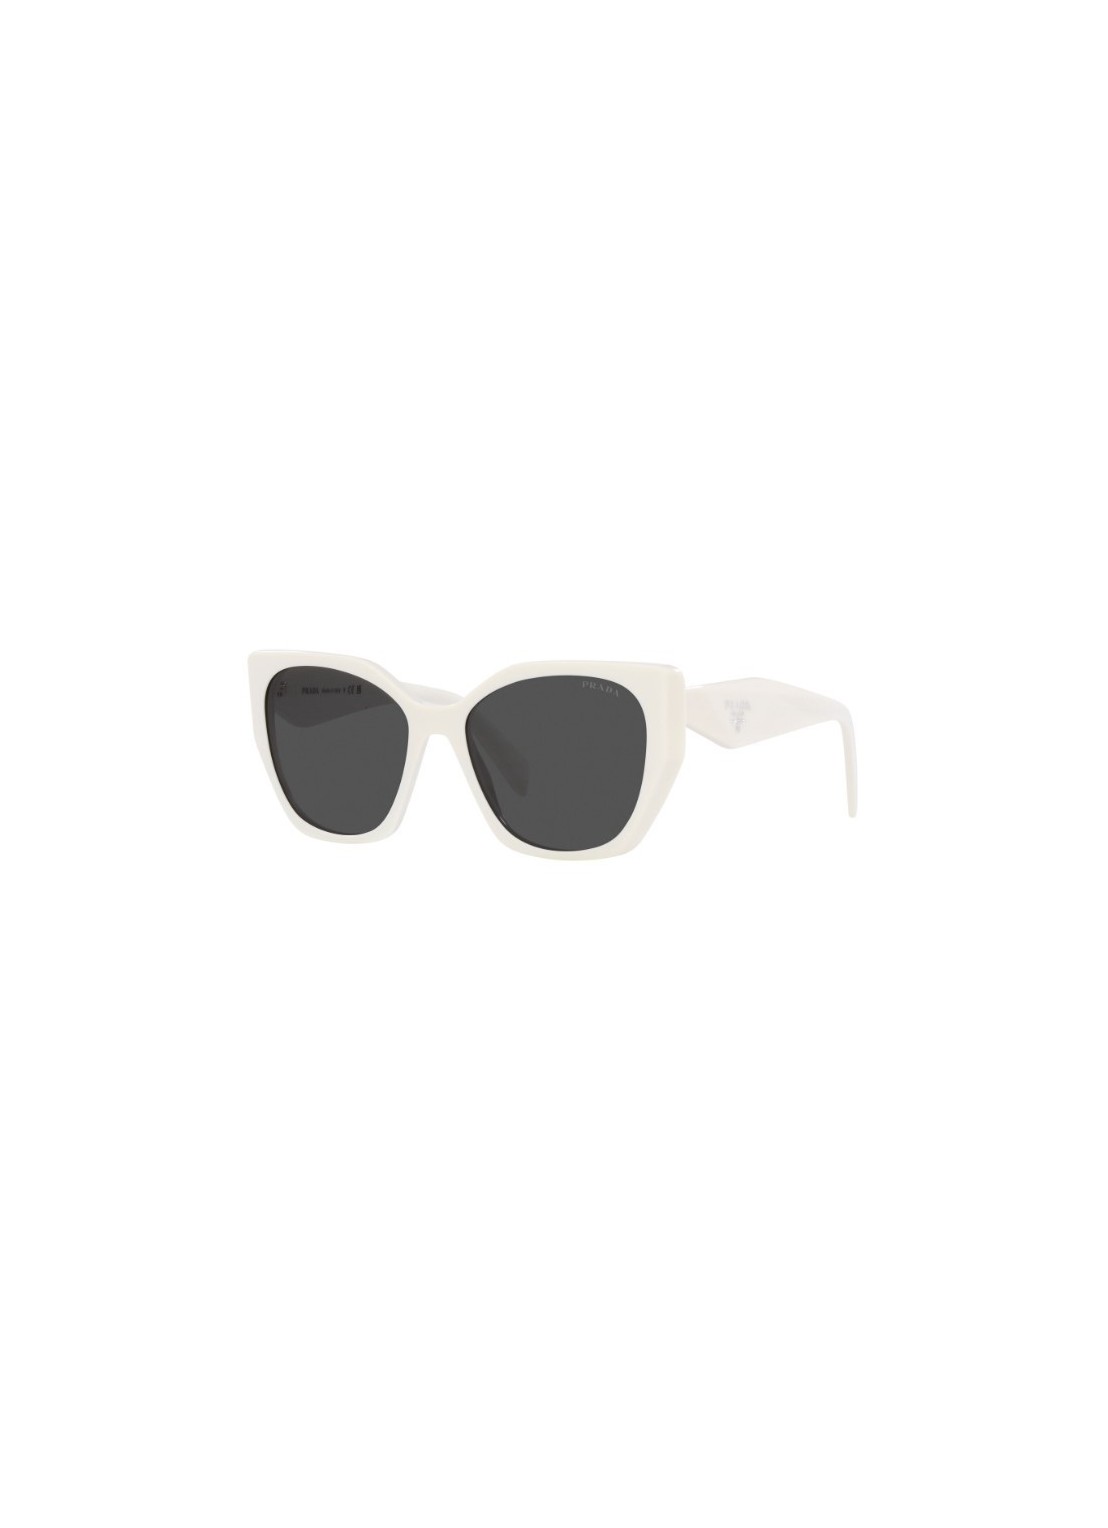 Gafas prada sunglasses woman 0pr19zs 0pr19zs 1425s0 talla transparente
 